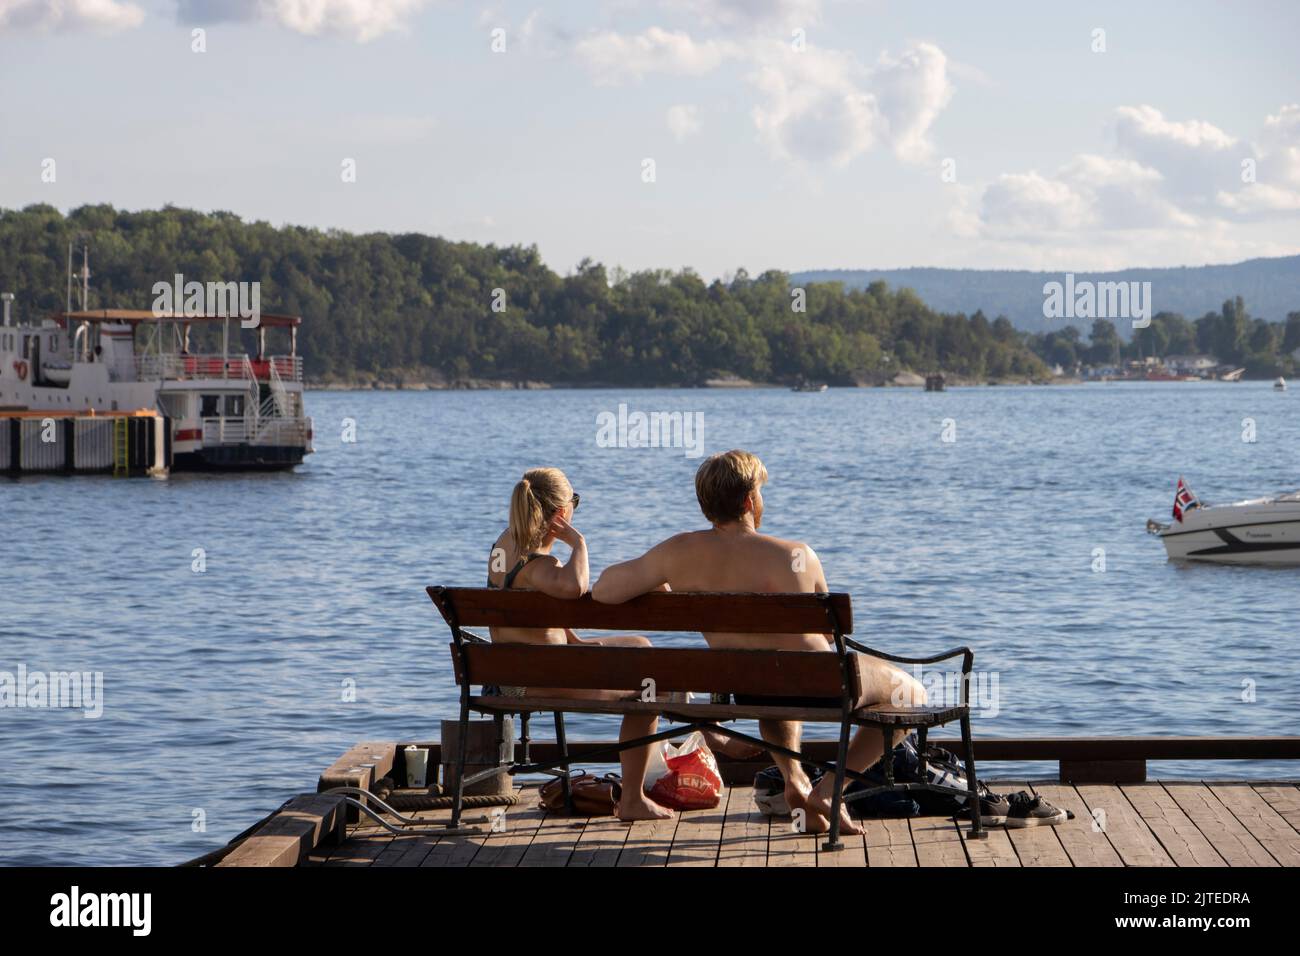 Una joven pareja disfruta del sol de la tarde mientras se sienta en un banco en el puerto de Oslo con vistas al fiordo de Oslo, Noruega, Escandinavia. Foto de stock